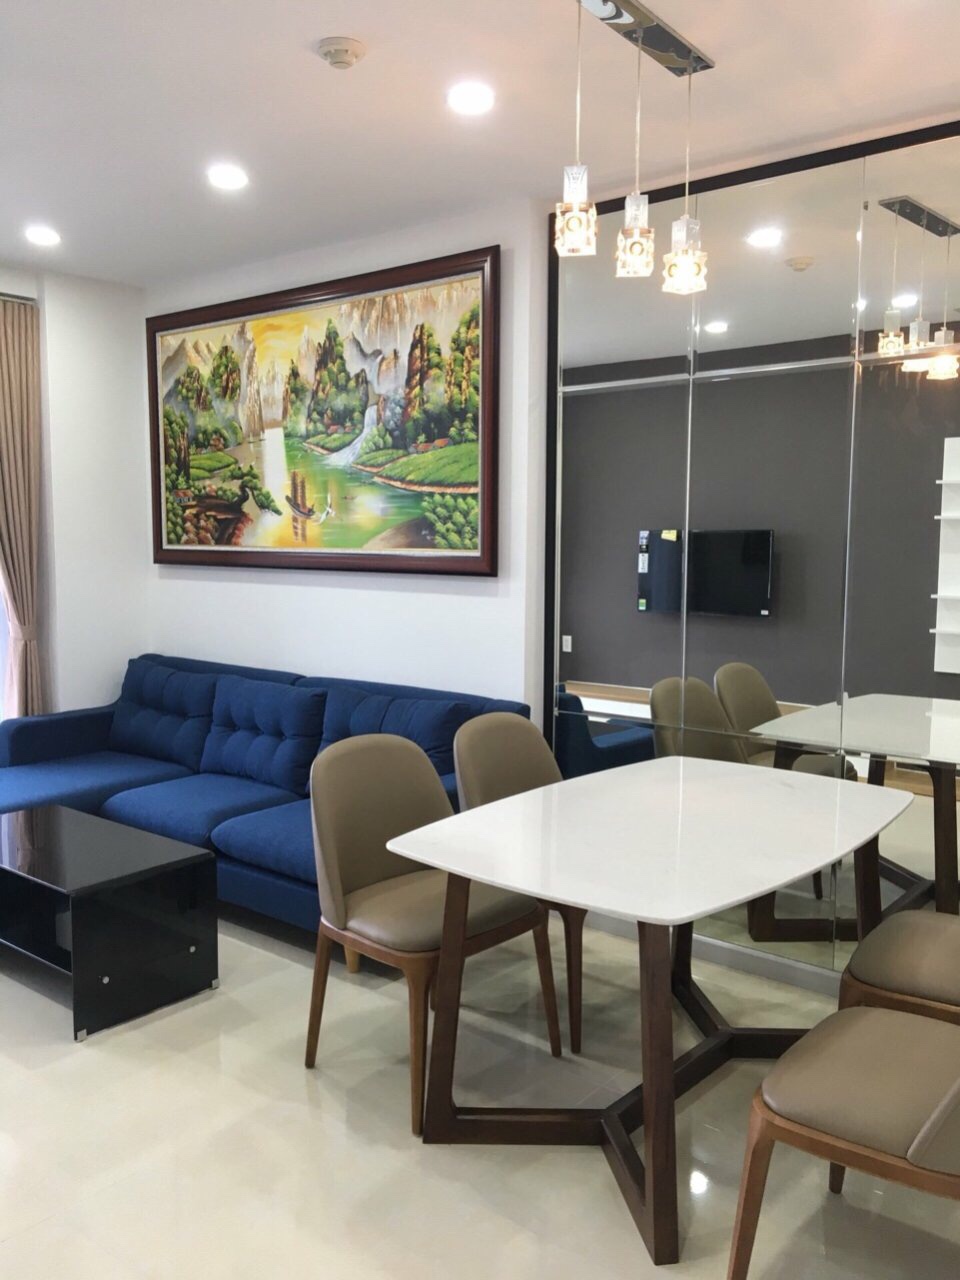  Cho thuê căn hộ 2PN-78m2 chung cư KINGTONS RESIDENCE quận Phú Nhuận.LH 0932 192 028 - Mai